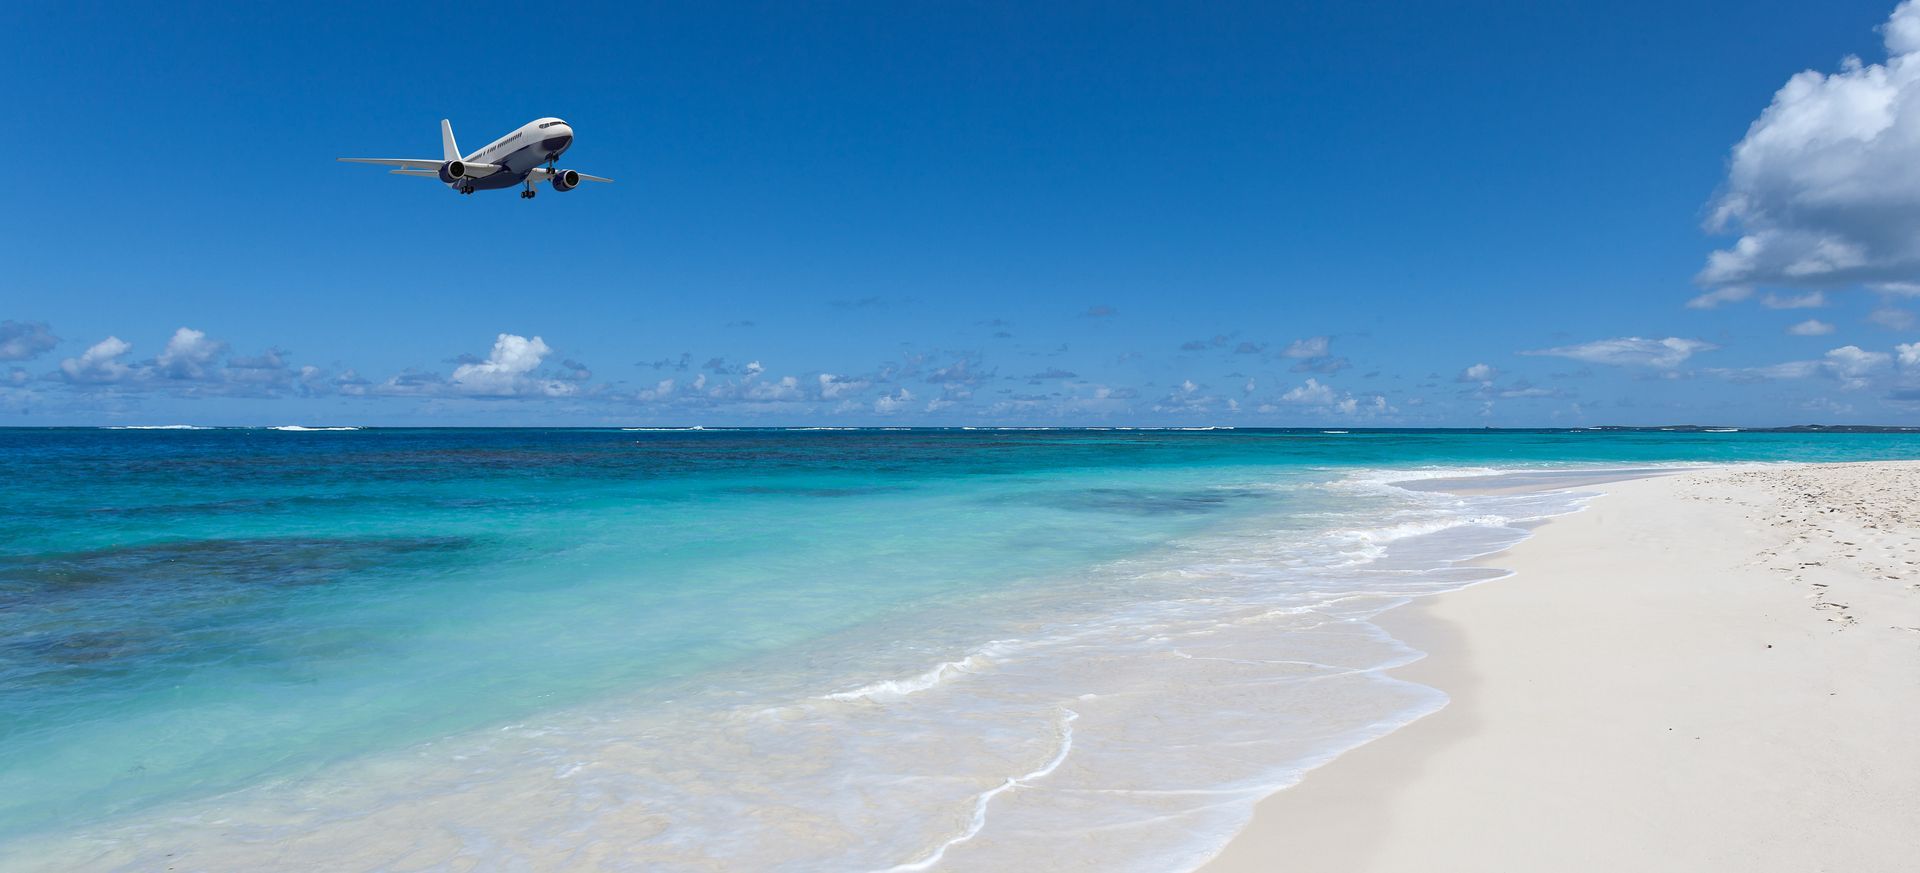 New flights to Anguilla this season